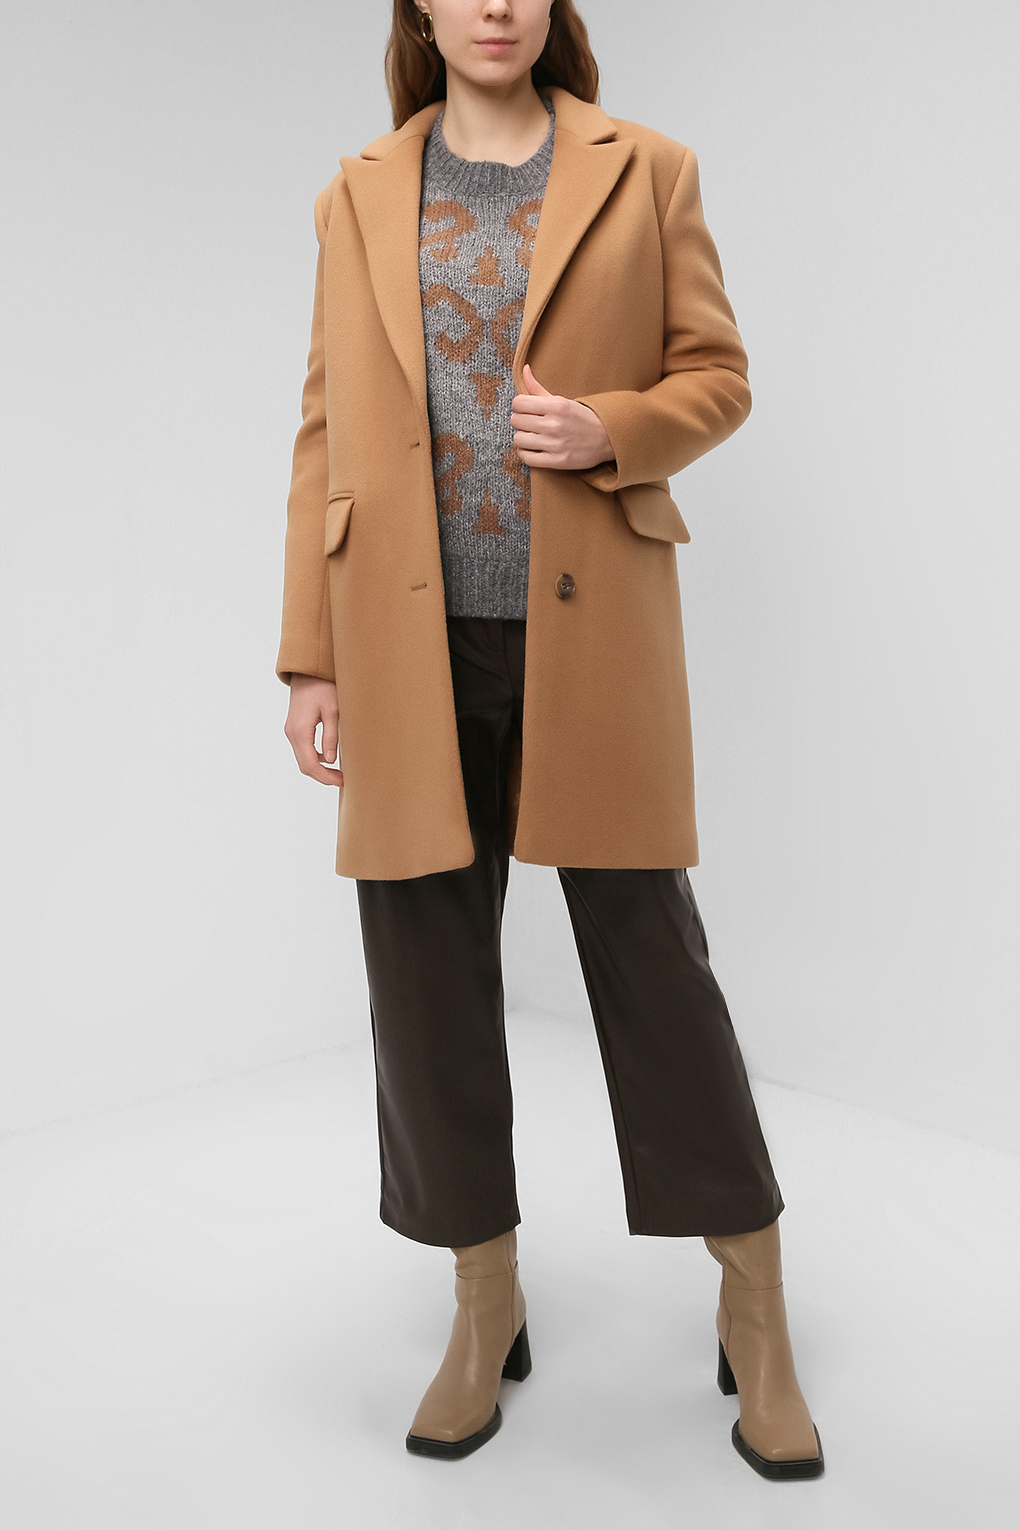 Пальто женское PAOLA RAY PR221-9030-01 коричневое XS